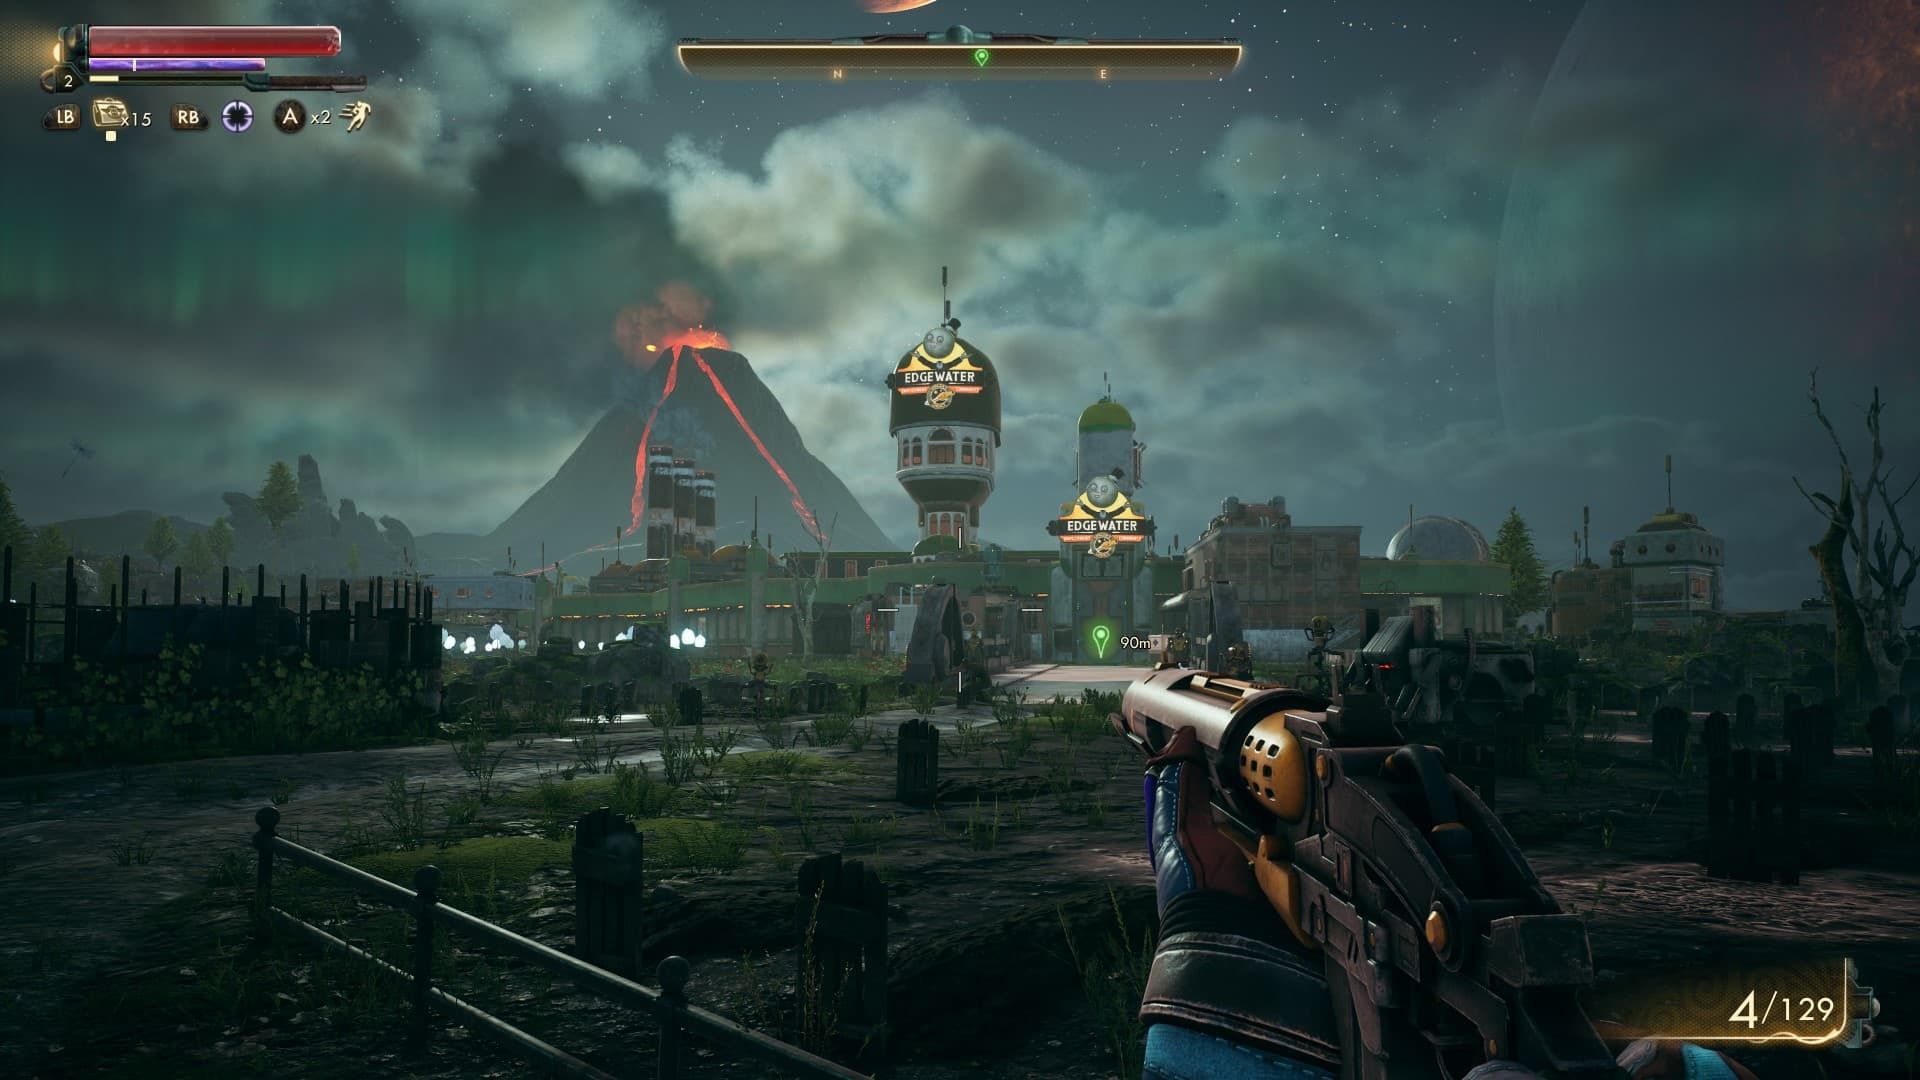 شخصیت اصلی با یک اسلحه در محیط بازی - یک آتشفشان در دوردست